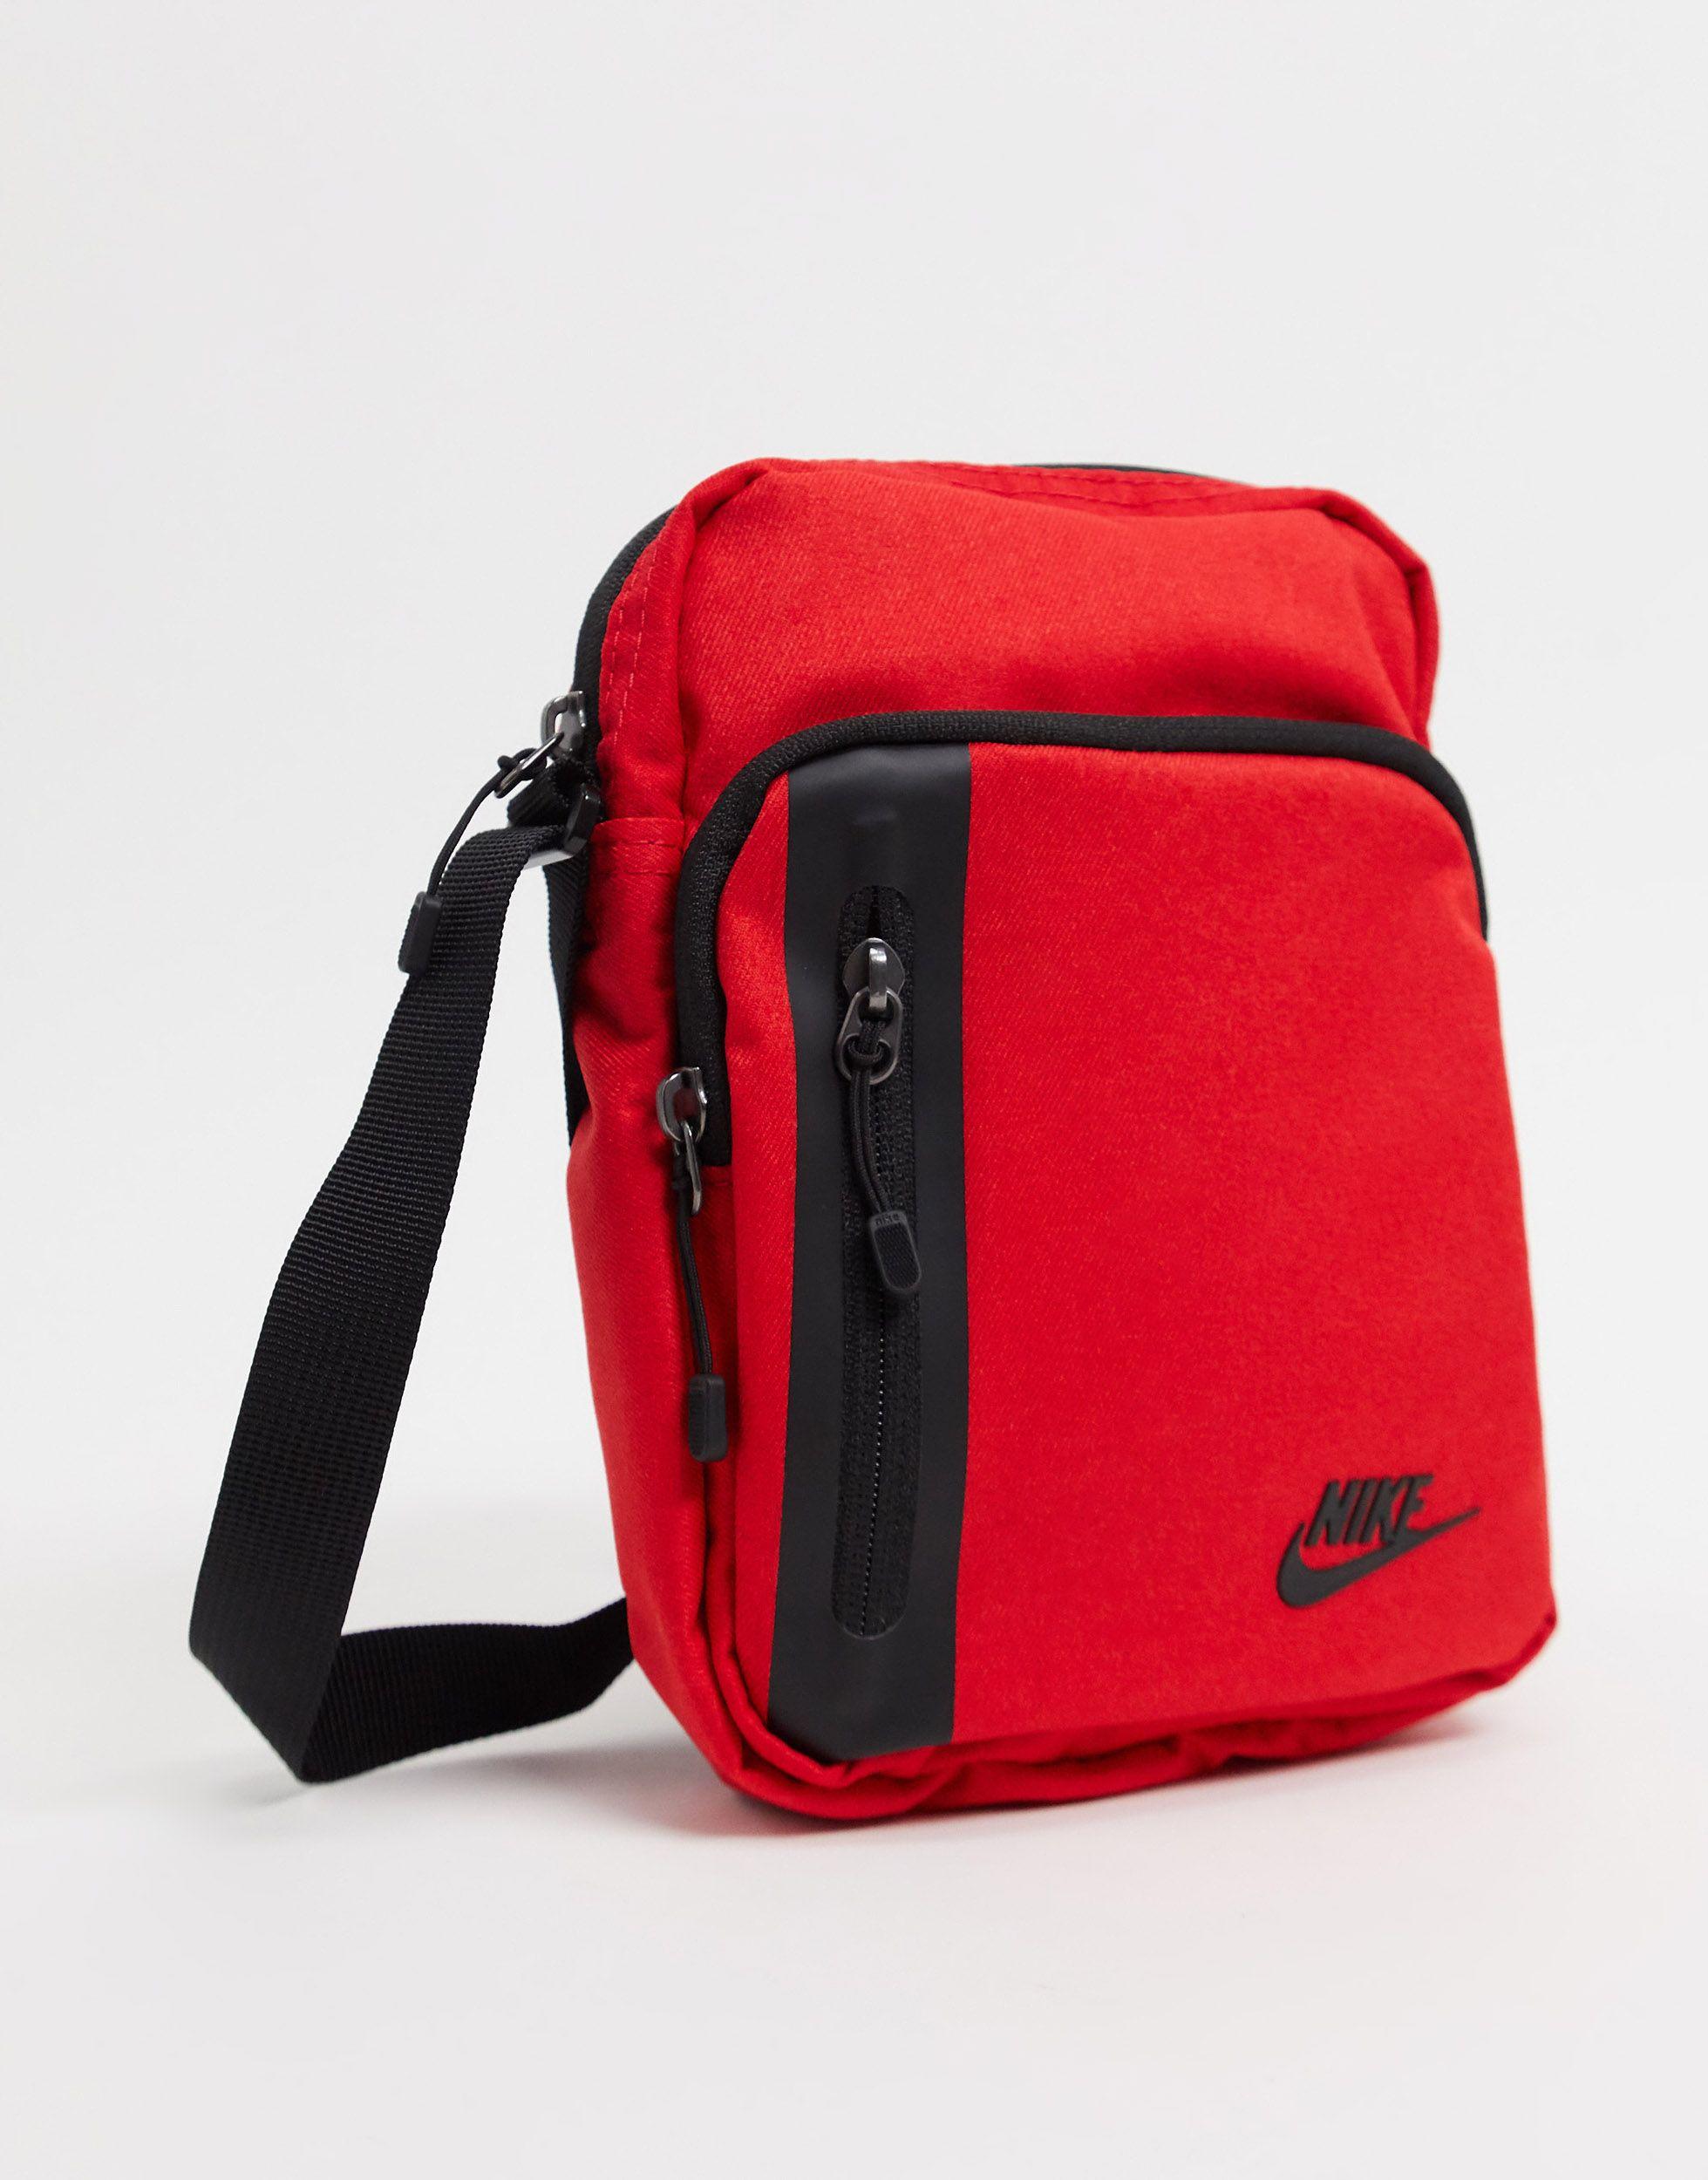 Nike Synthetic Tech Cross-body Bag in 